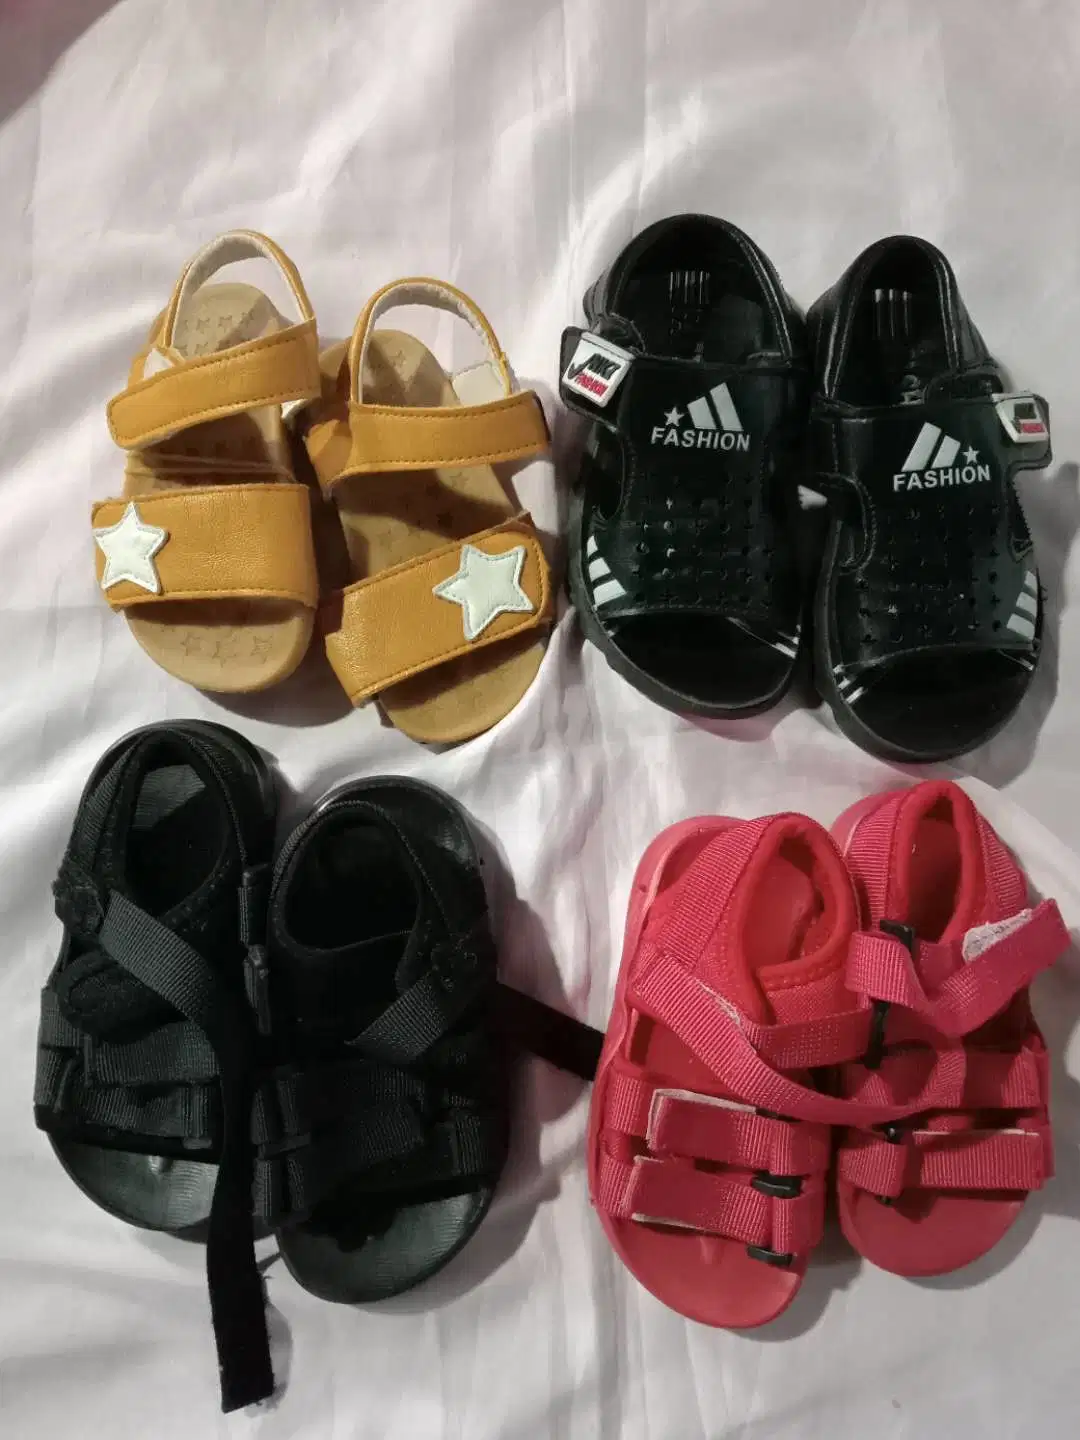 Les Meilleures Ventes De Chaussures de bebé ropa usada